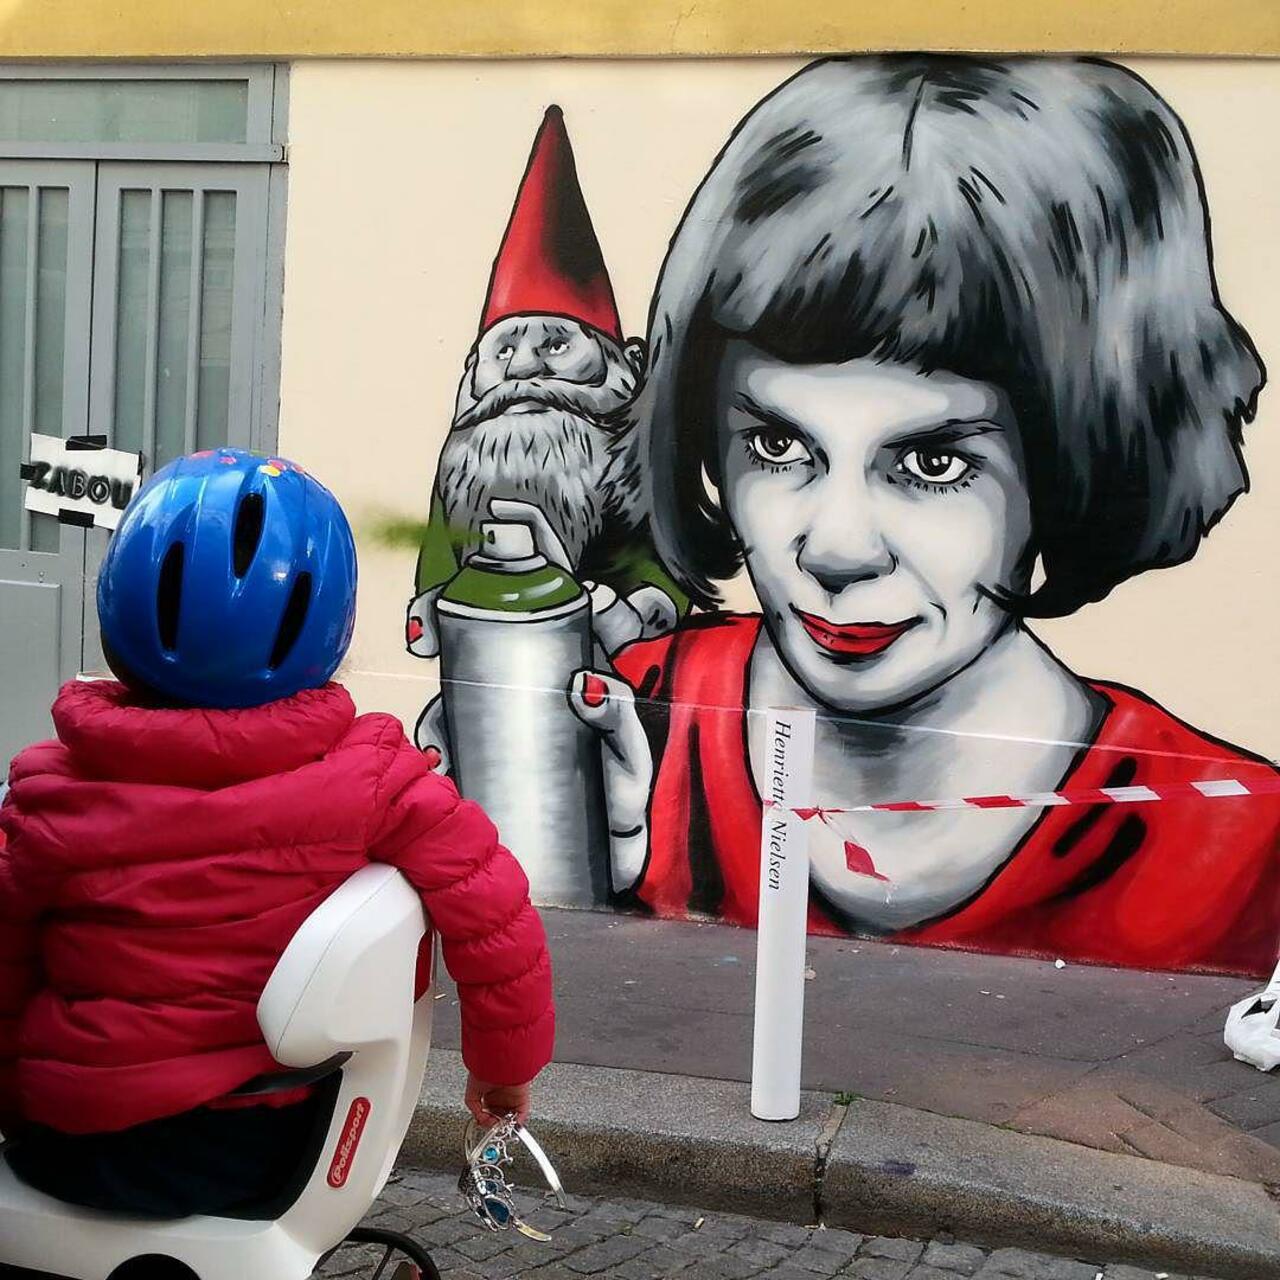 #Paris #graffiti photo by @fotoflaneuse http://ift.tt/1GDv8Zo #StreetArt http://t.co/rOXP316ubF